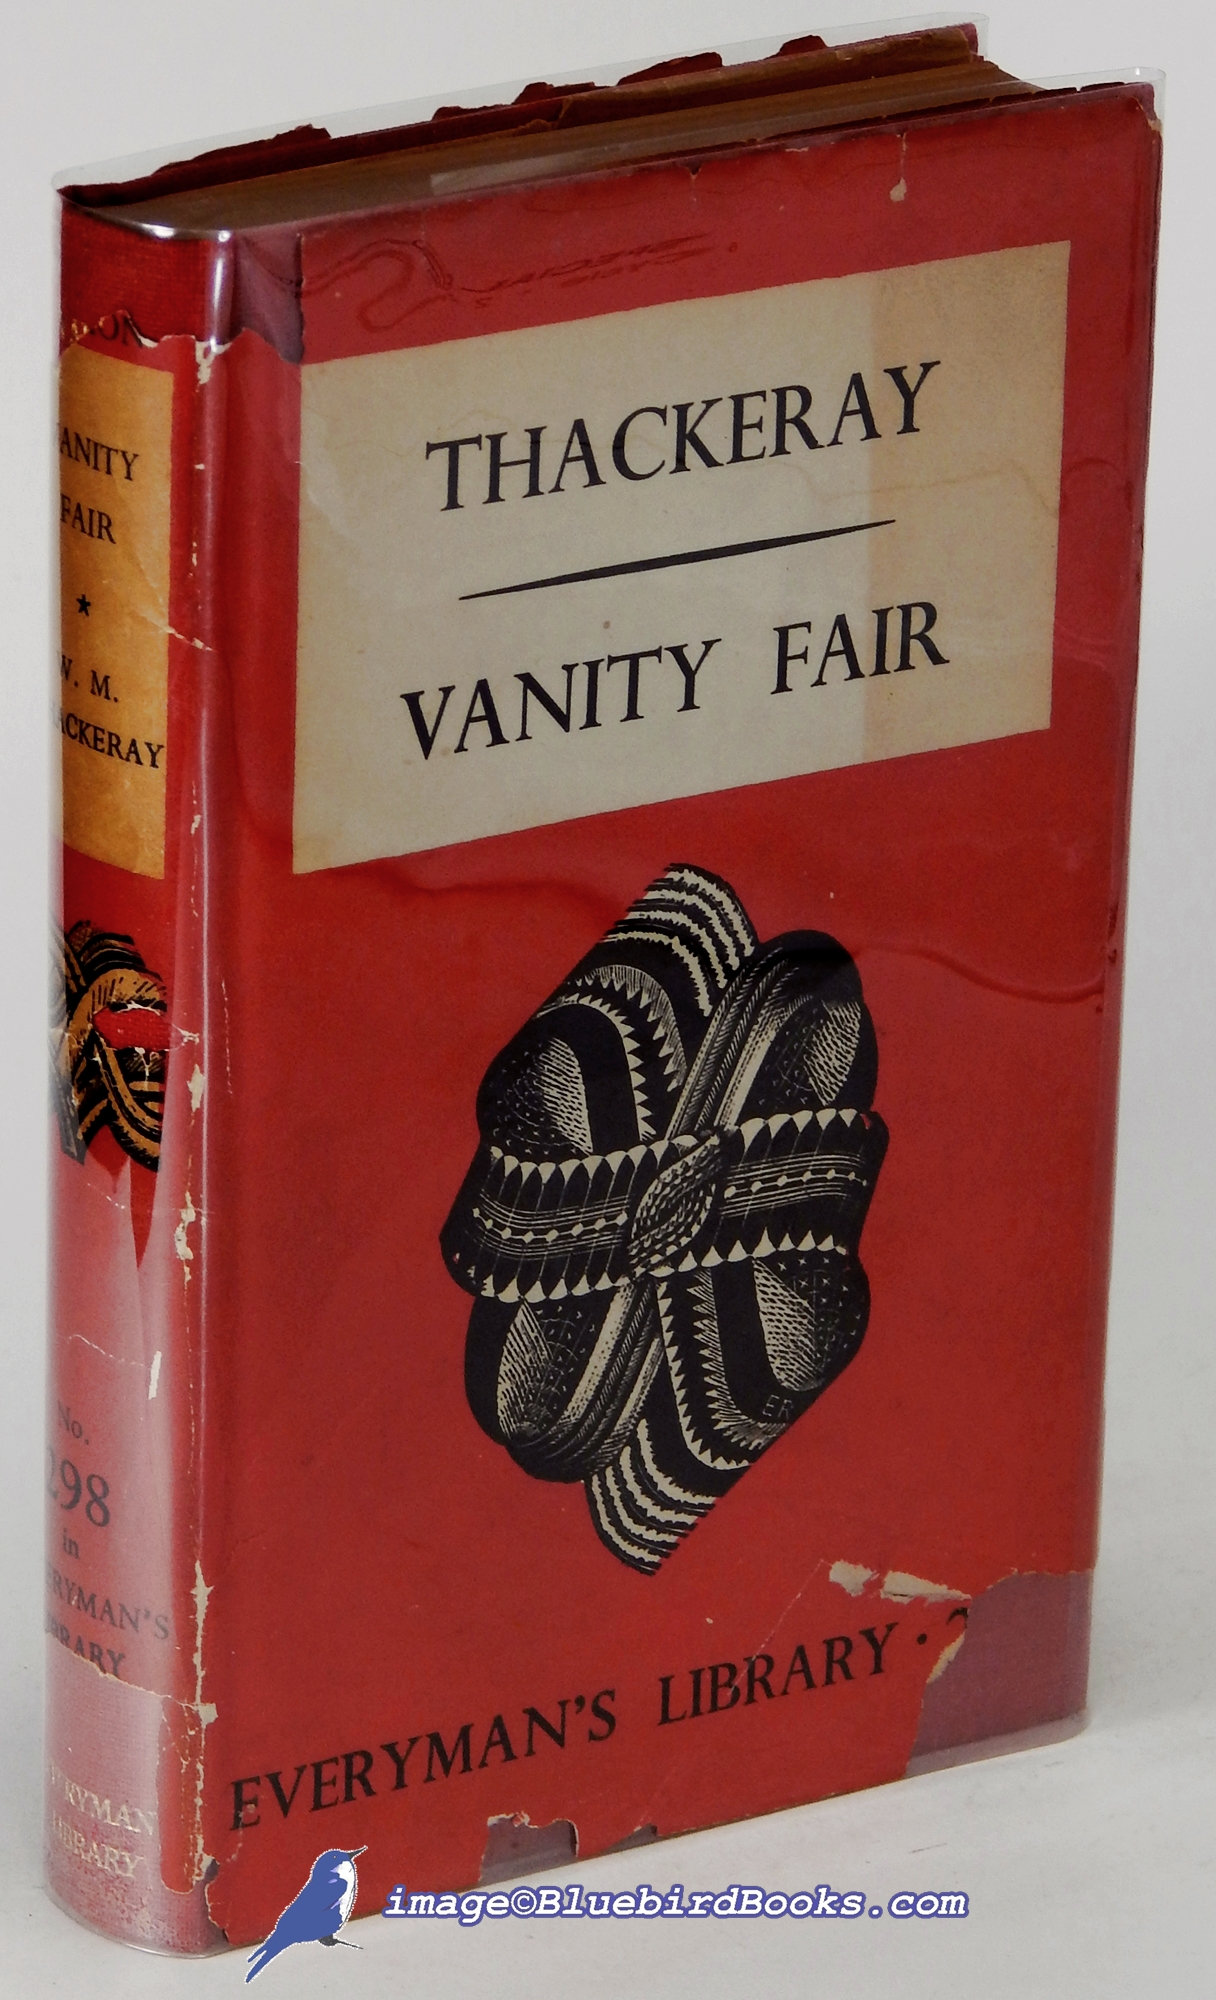 THACKERAY, WILLIAM MAKEPEACE - Vanity Fair (Everyman's Library #298)